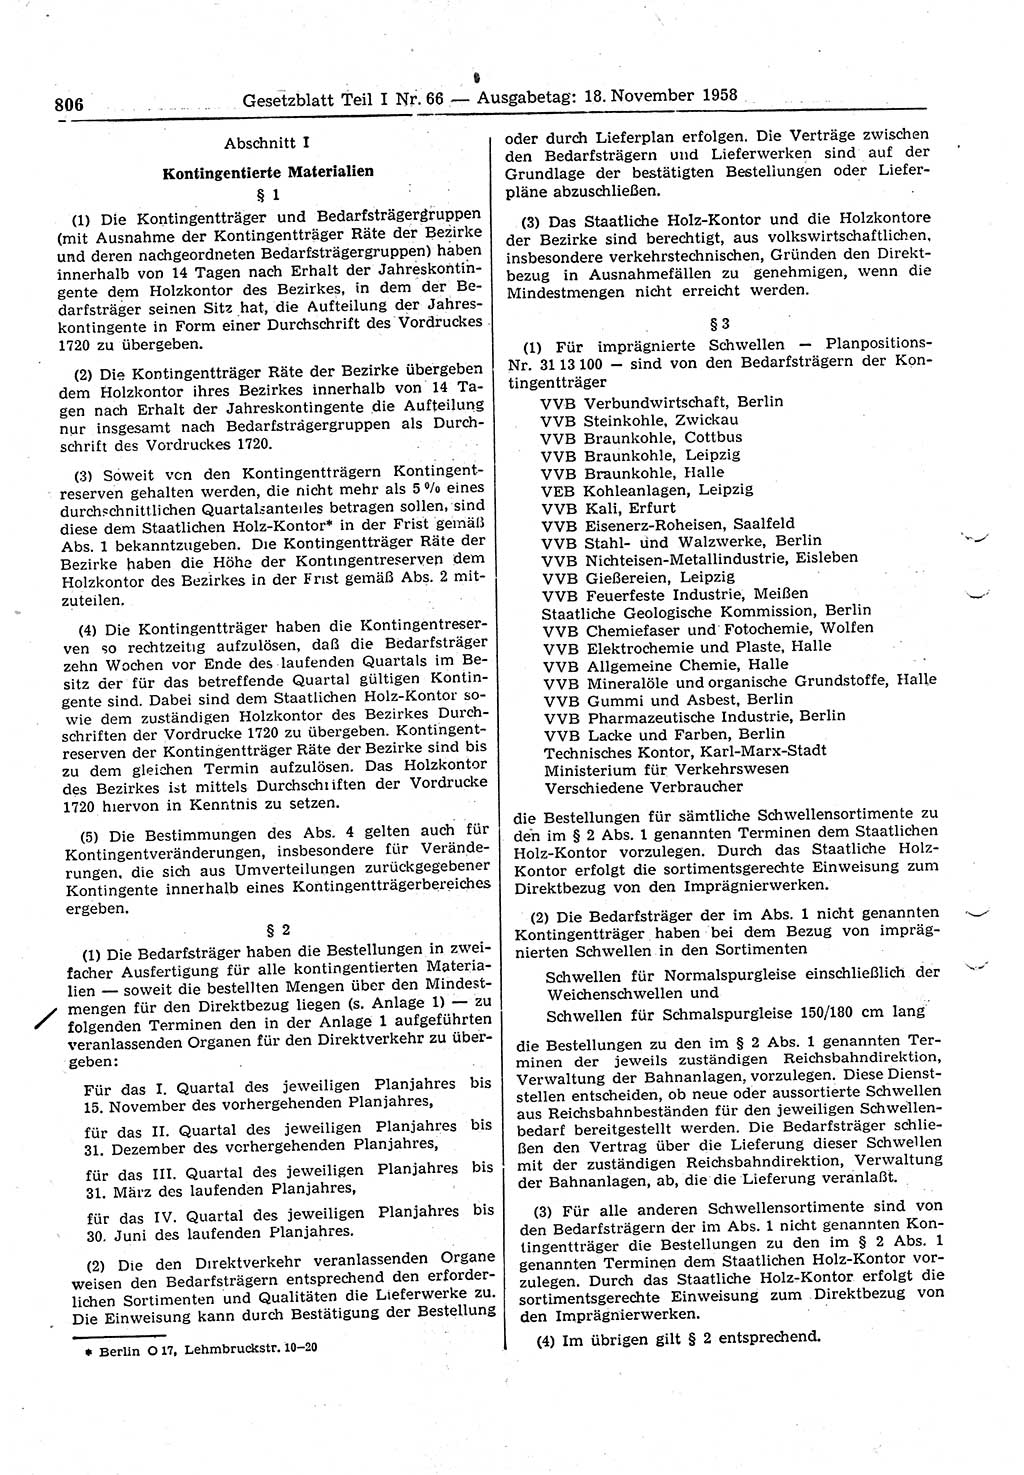 Gesetzblatt (GBl.) der Deutschen Demokratischen Republik (DDR) Teil Ⅰ 1958, Seite 806 (GBl. DDR Ⅰ 1958, S. 806)